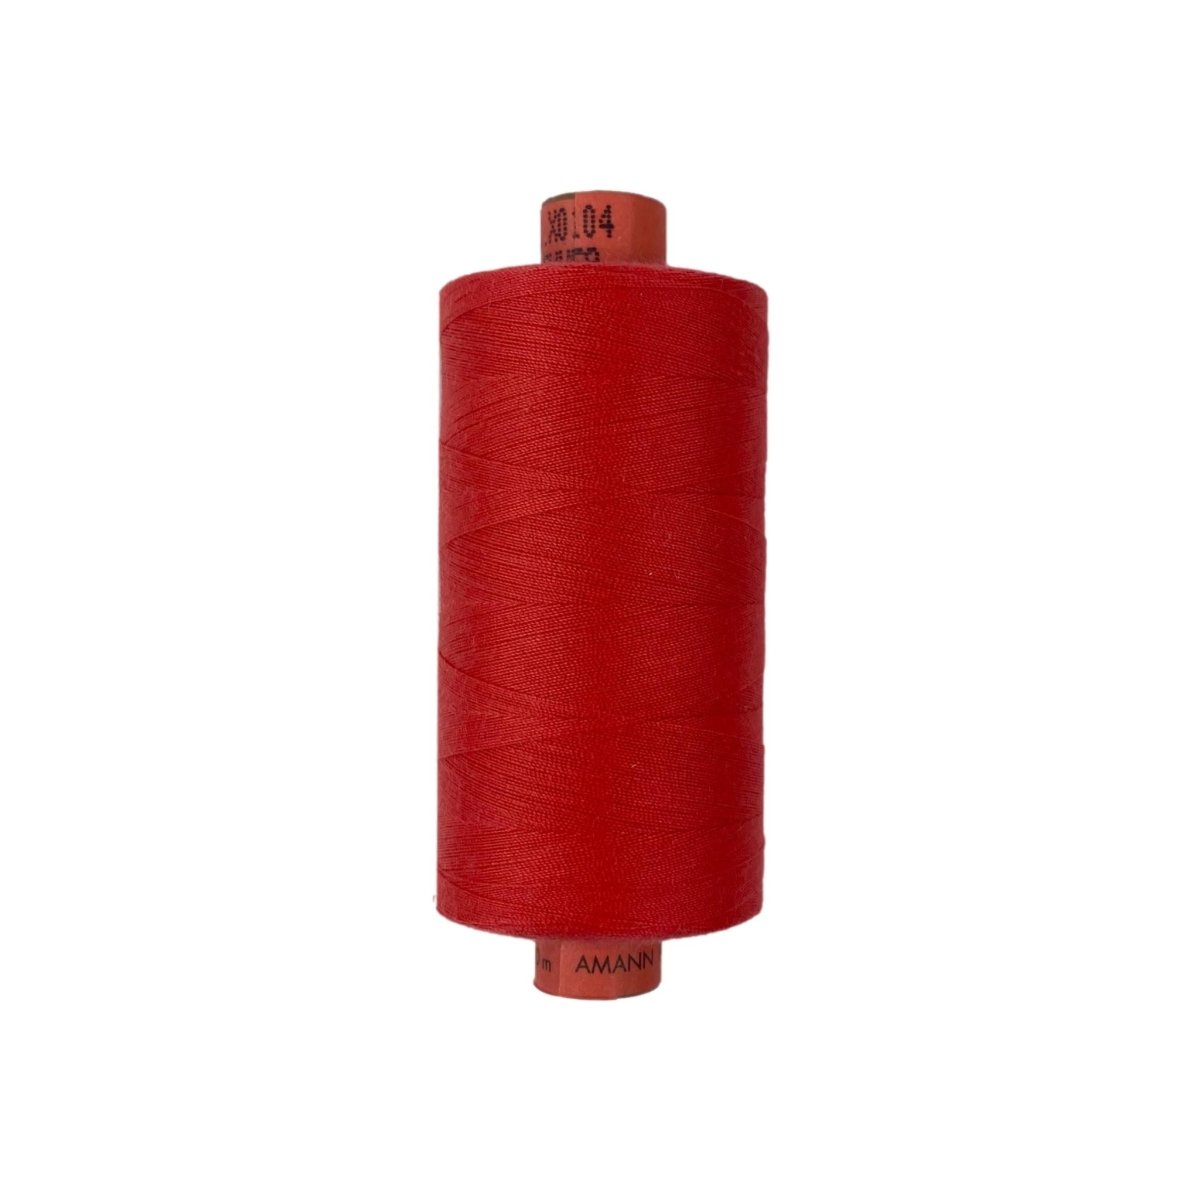 Rasant Thread - 1000m - Dark Melon Red X0104 - Sewing Gem